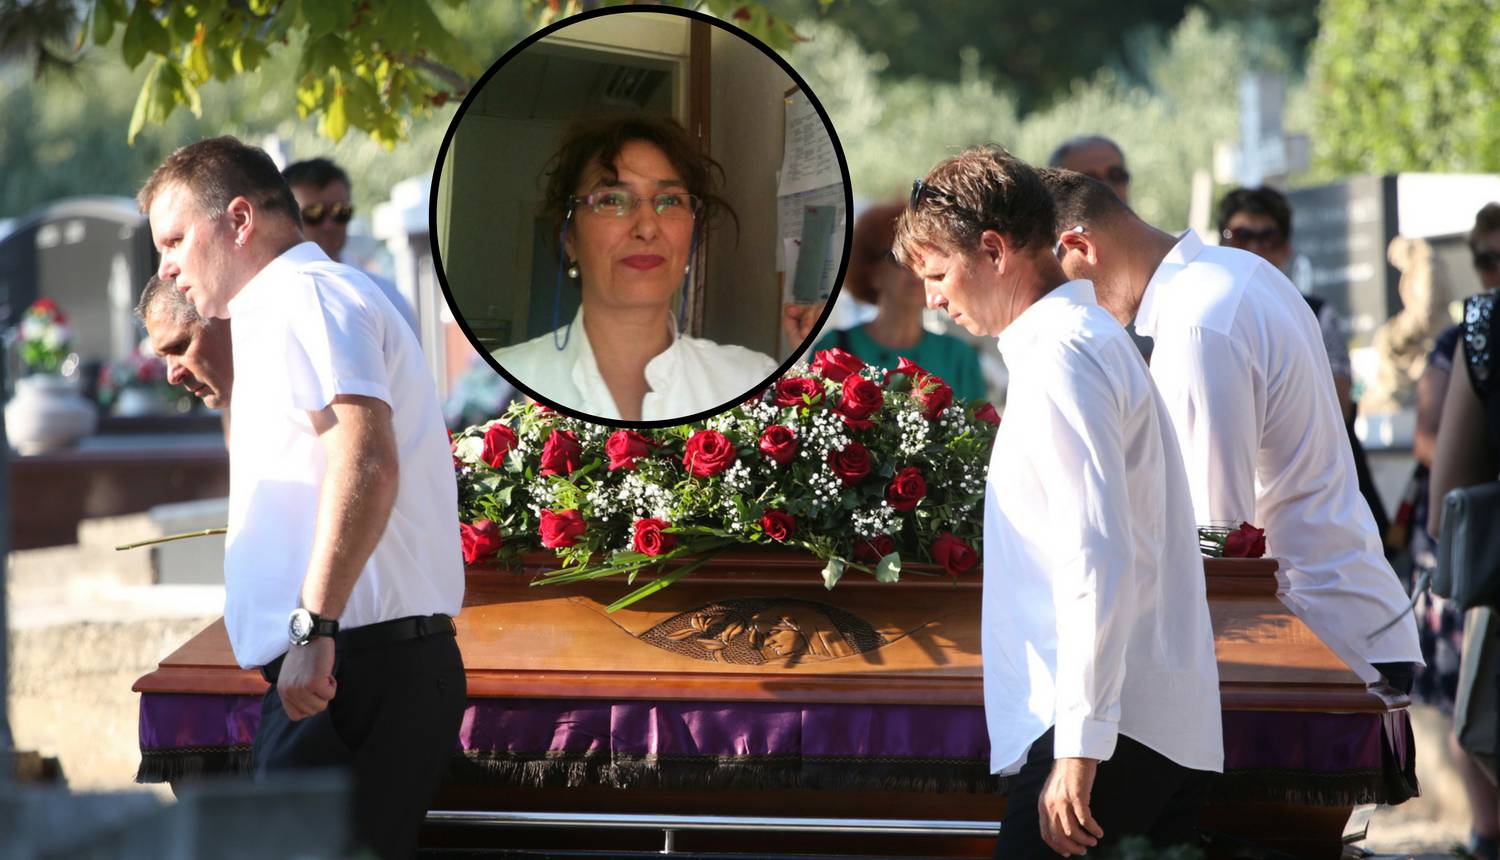 Ubojstvo Asje Tukić u Trogiru: Bivši suprug ostaje u pritvoru